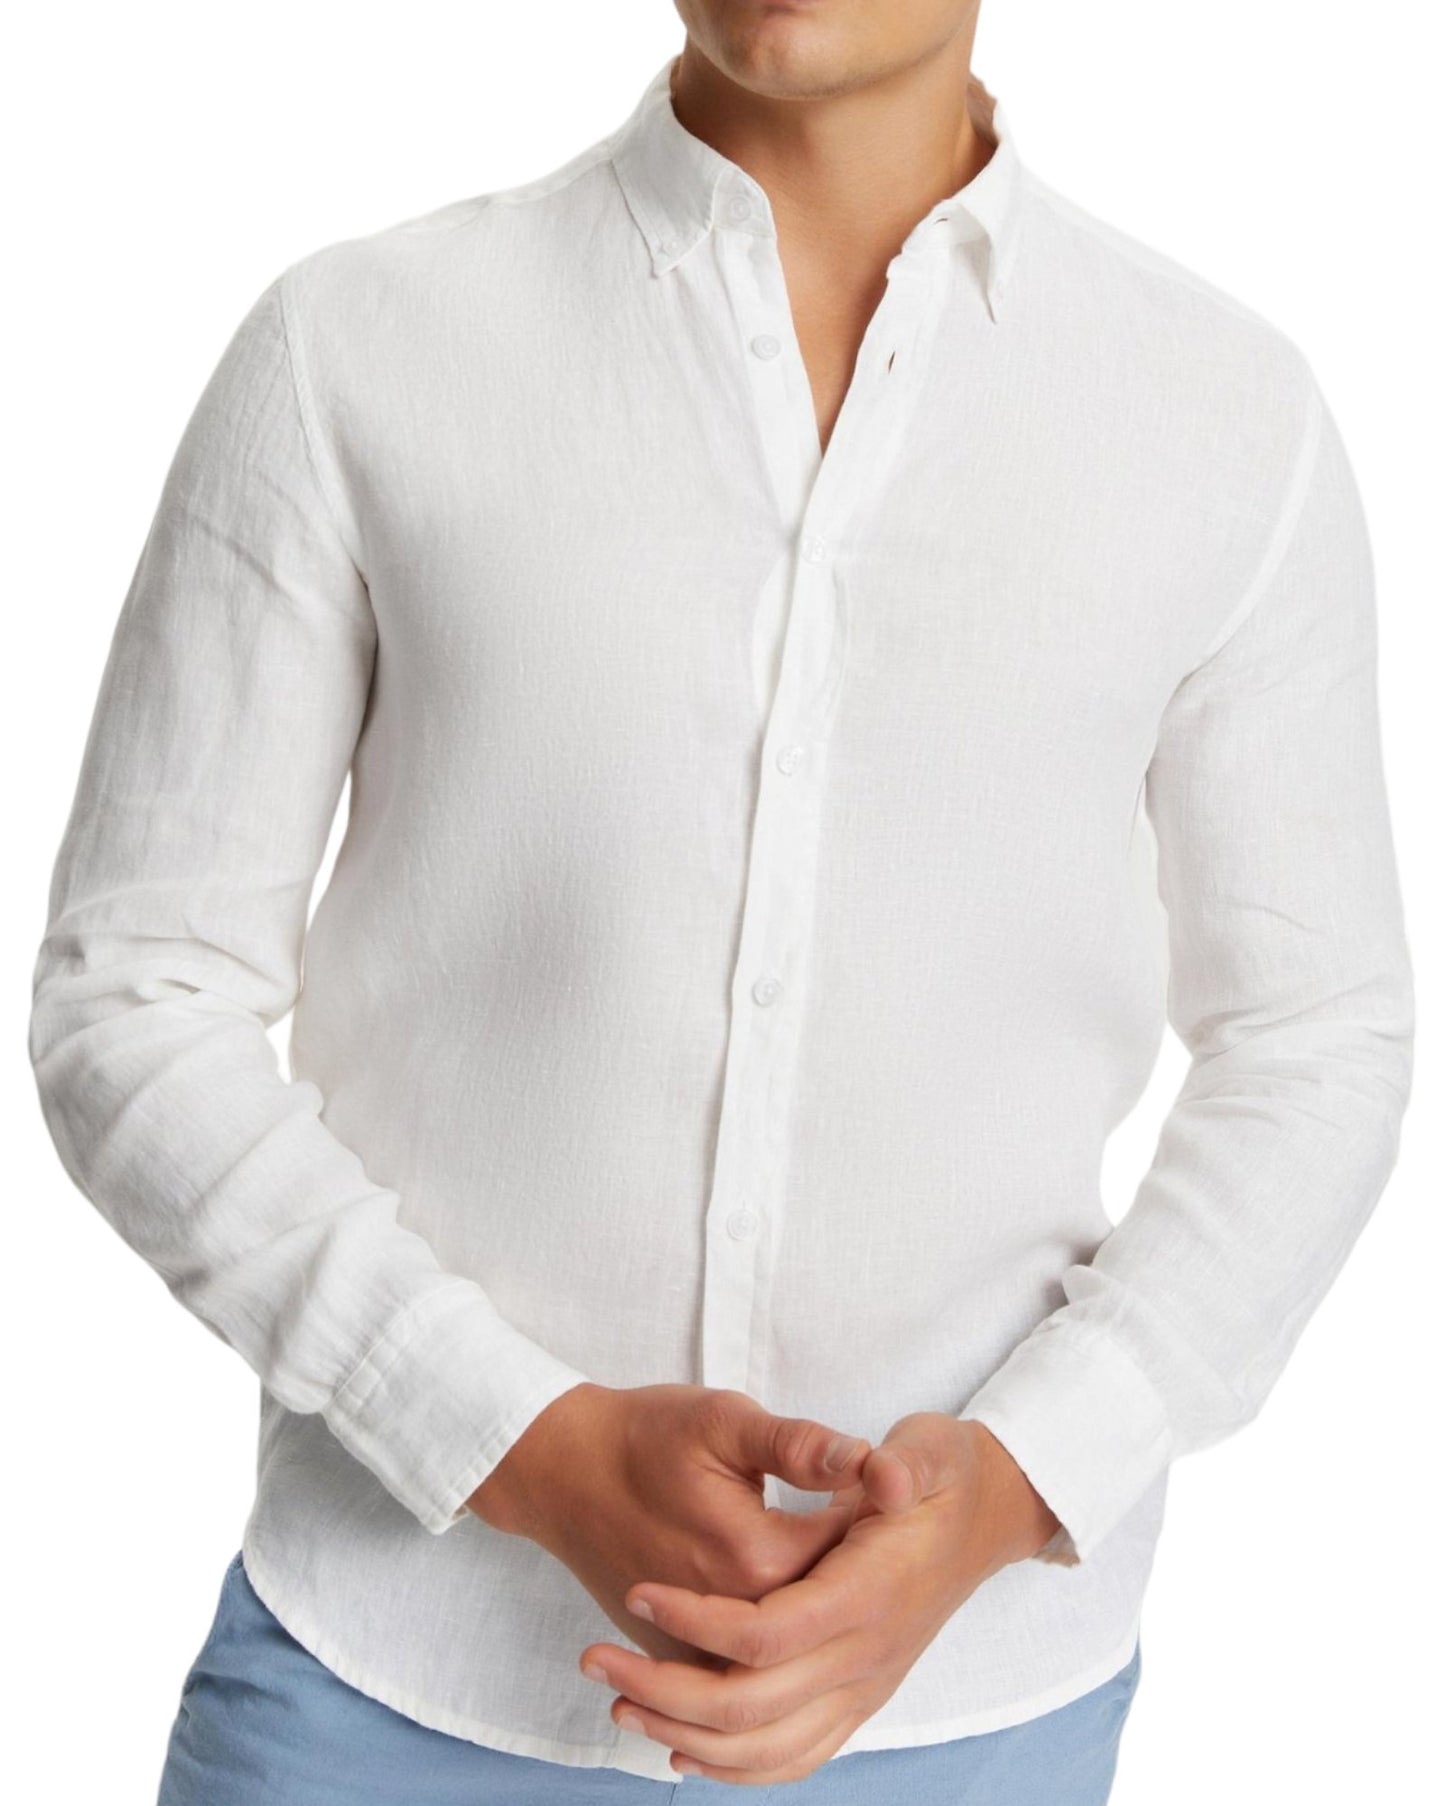 Classic Fit Linen White Long Sleeve Shirt Shirt 99percenthandmade   